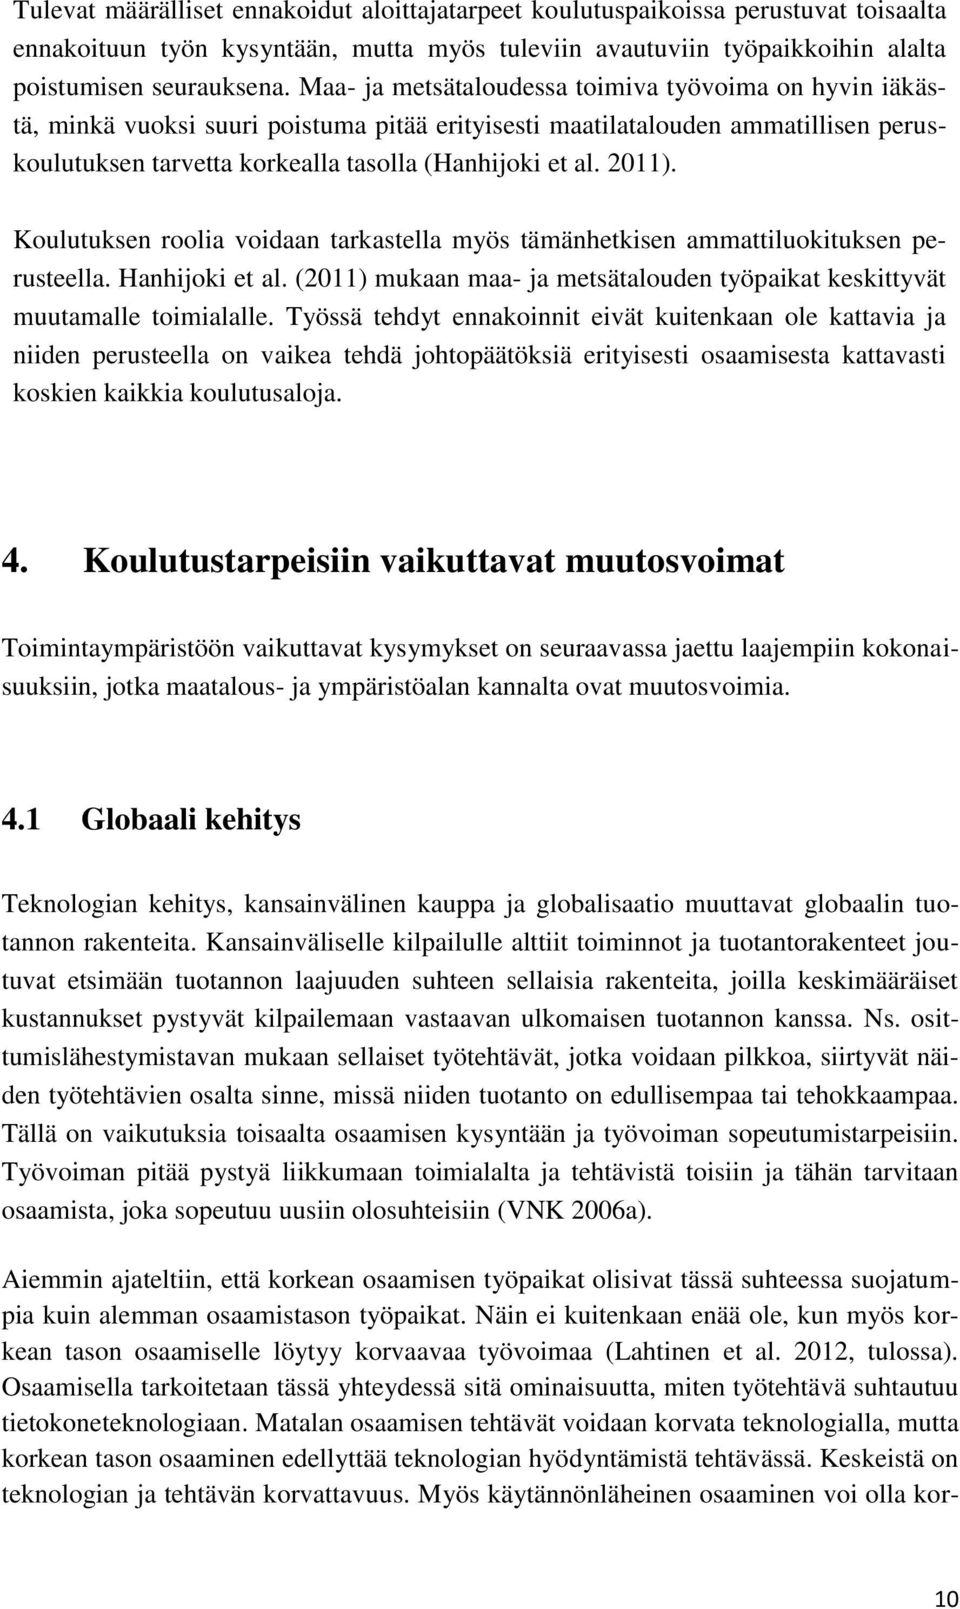 2011). Koulutuksen roolia voidaan tarkastella myös tämänhetkisen ammattiluokituksen perusteella. Hanhijoki et al. (2011) mukaan maa- ja metsätalouden työpaikat keskittyvät muutamalle toimialalle.